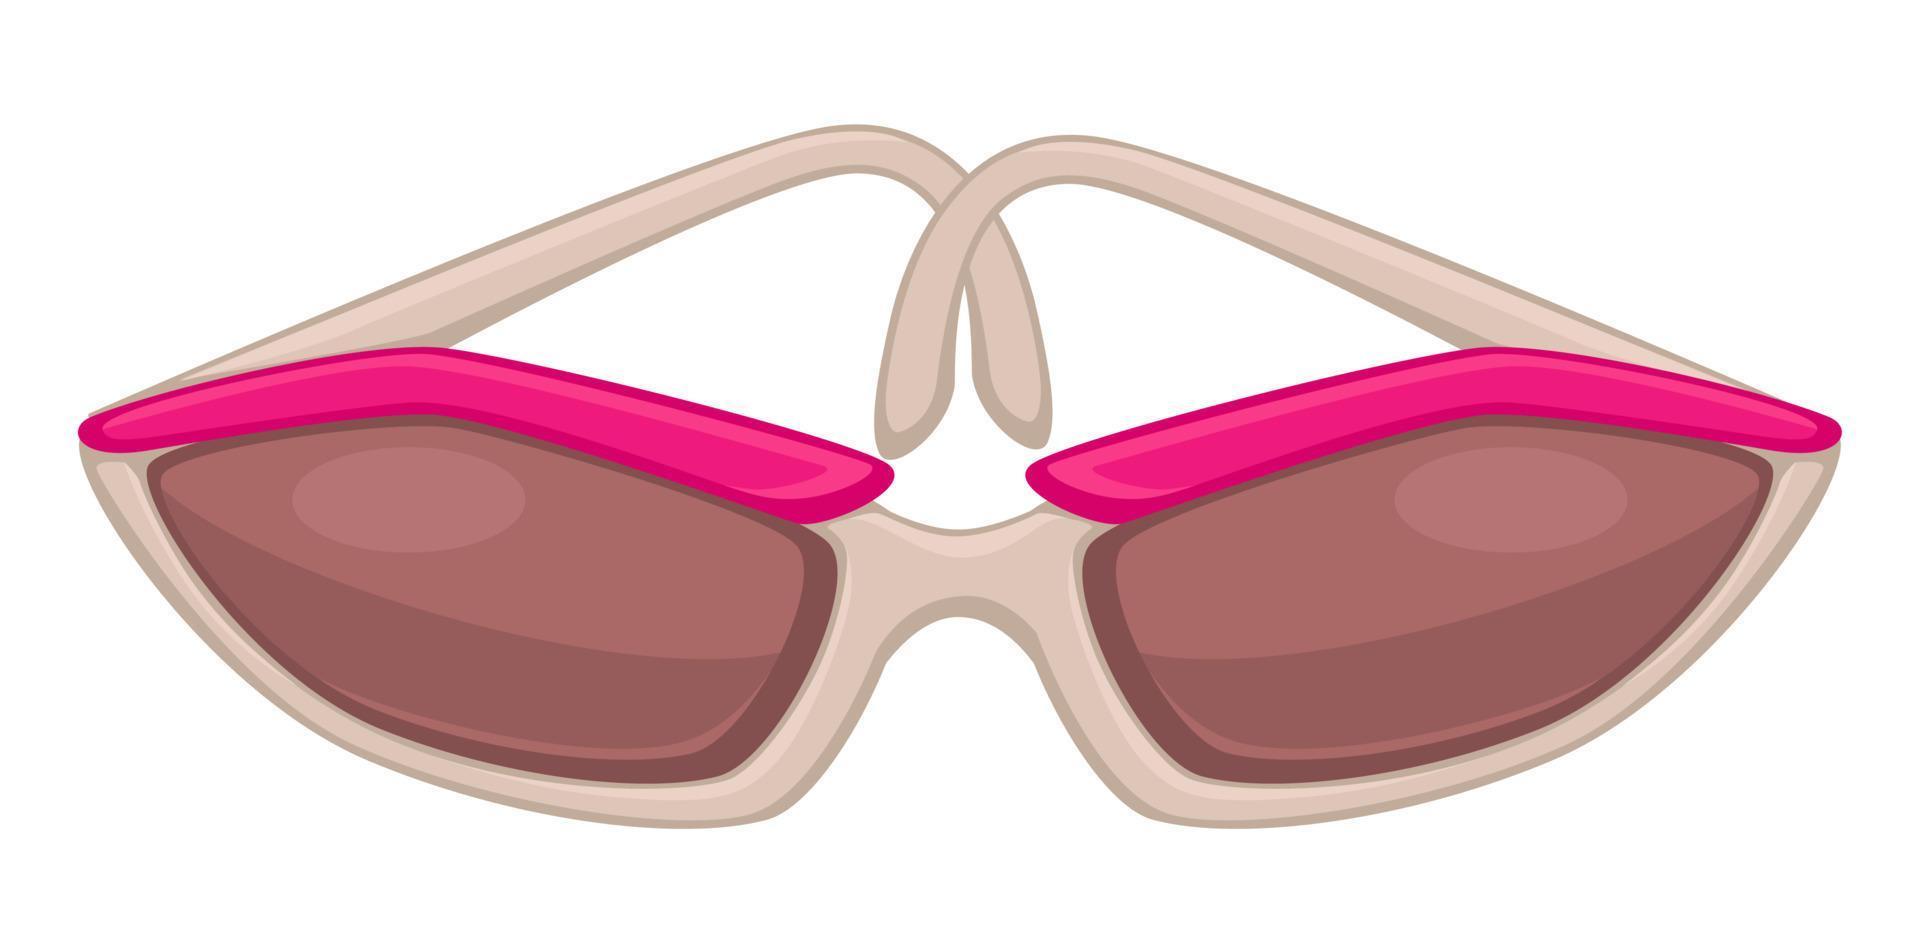 gafas de sol de mujer de moda para las vacaciones de verano, accesorios elegantes vector